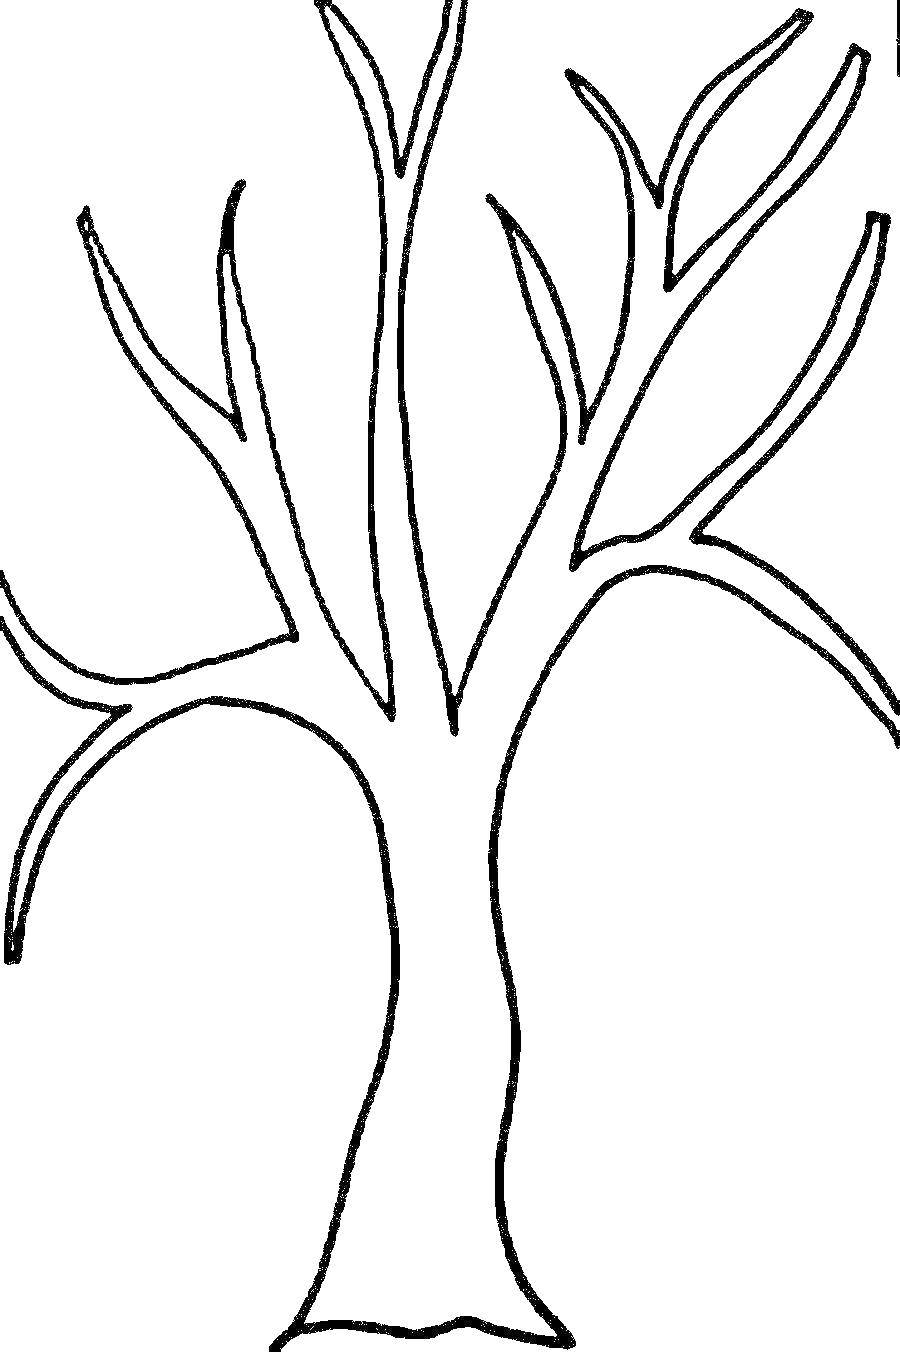 Дерево без листьев рисунок Изображения – скачать бесплатно на Freepik